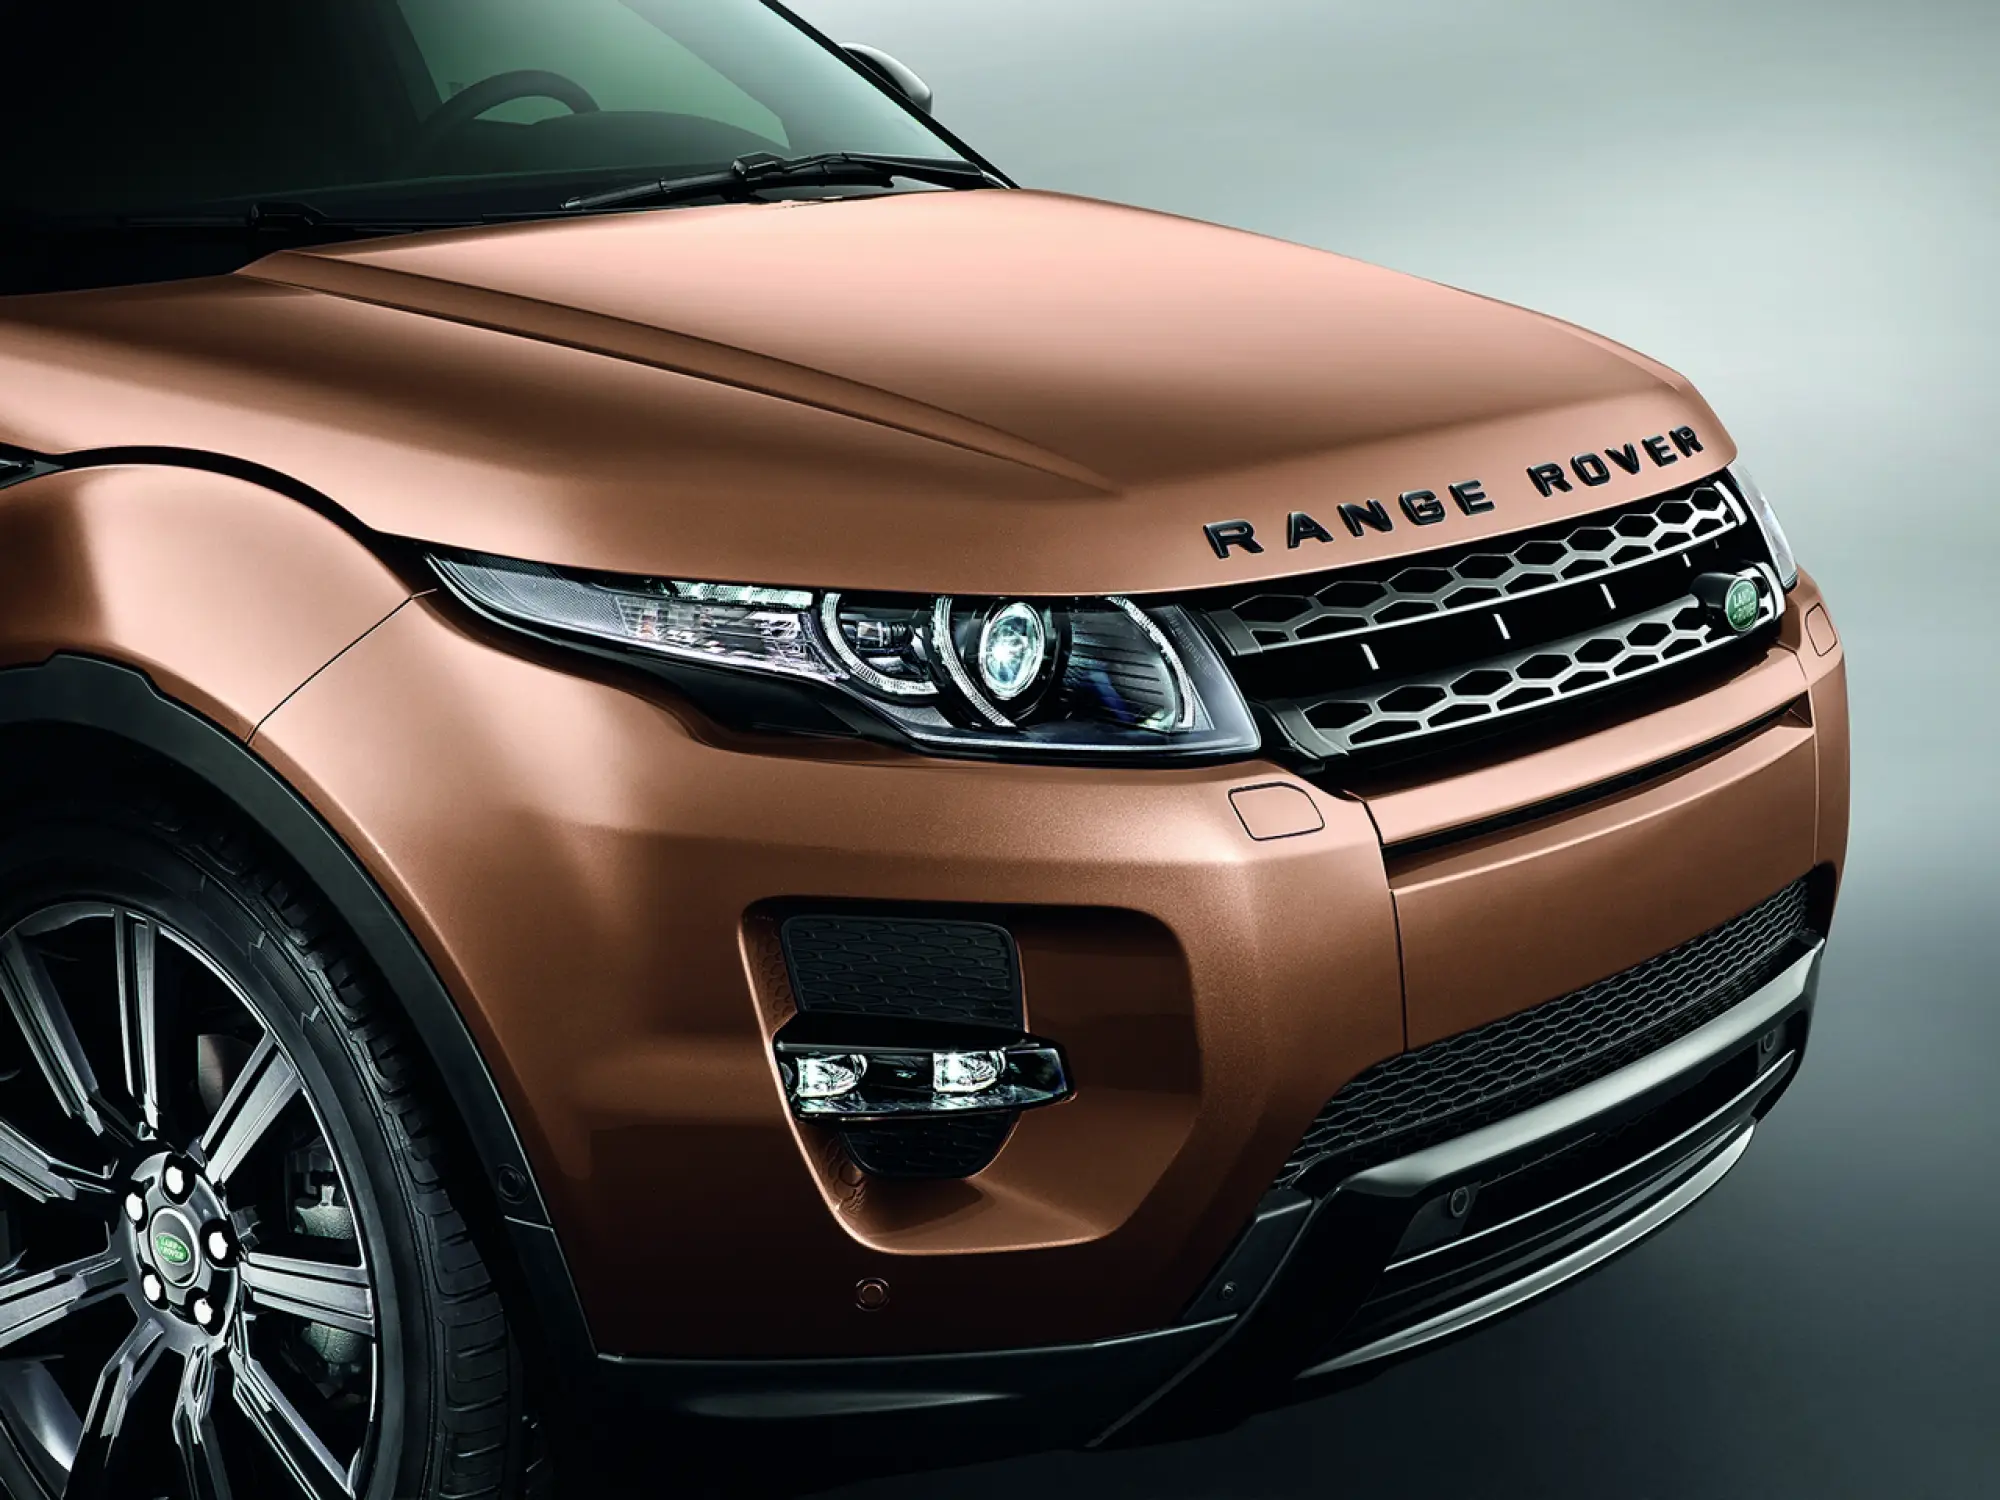 Range Rover Evoque (studio) - Salone di Francoforte 2013 - 5